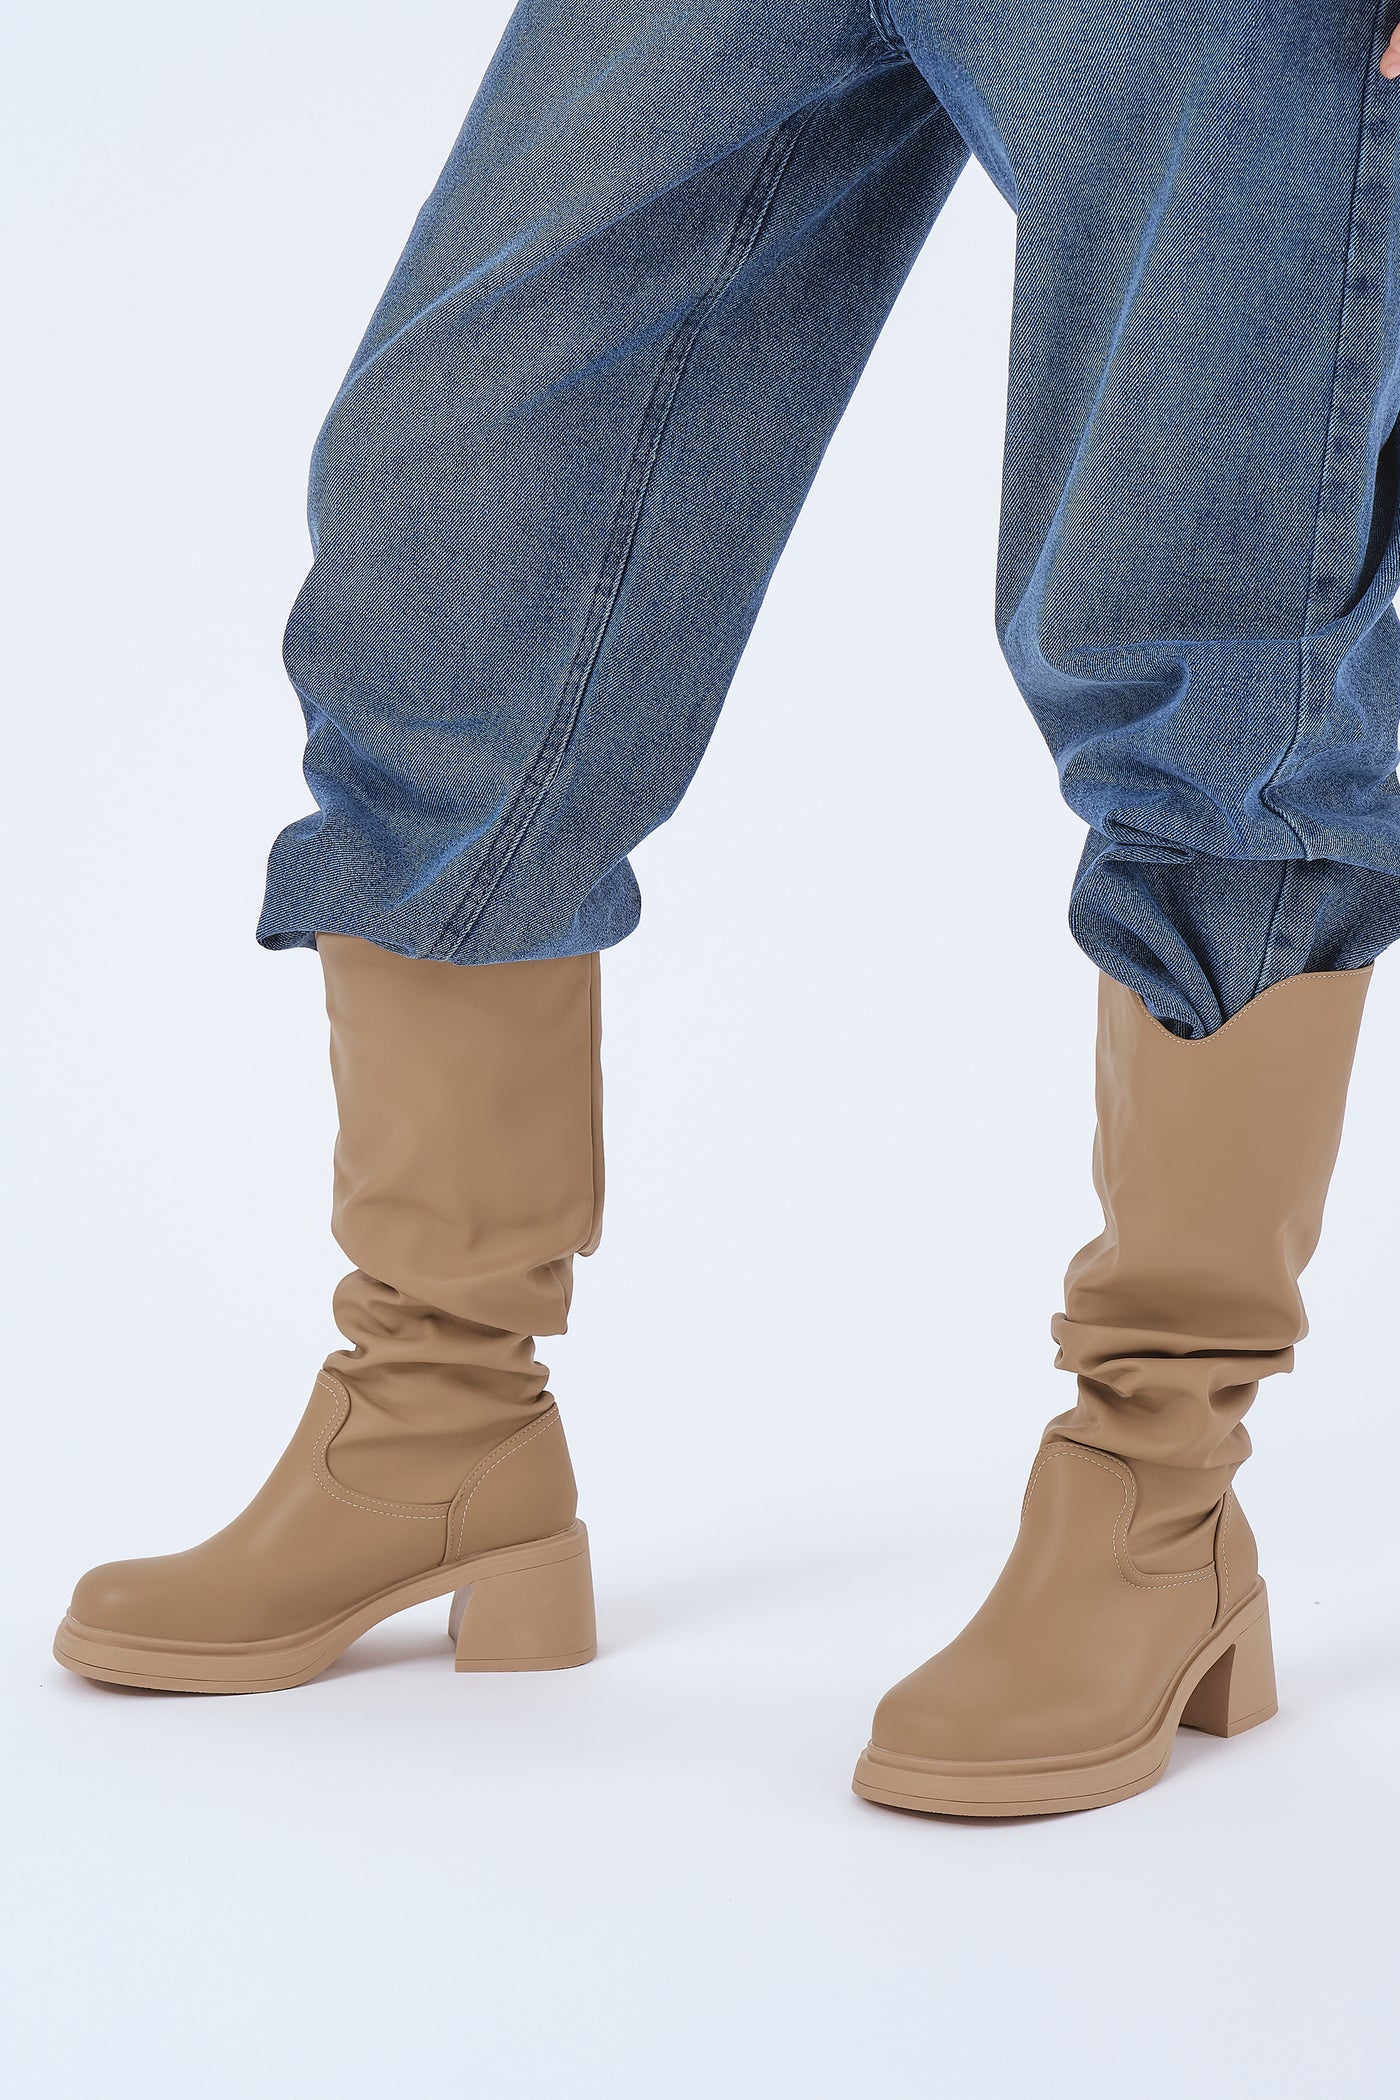 storets.com Annie Platform Knee Length Boots